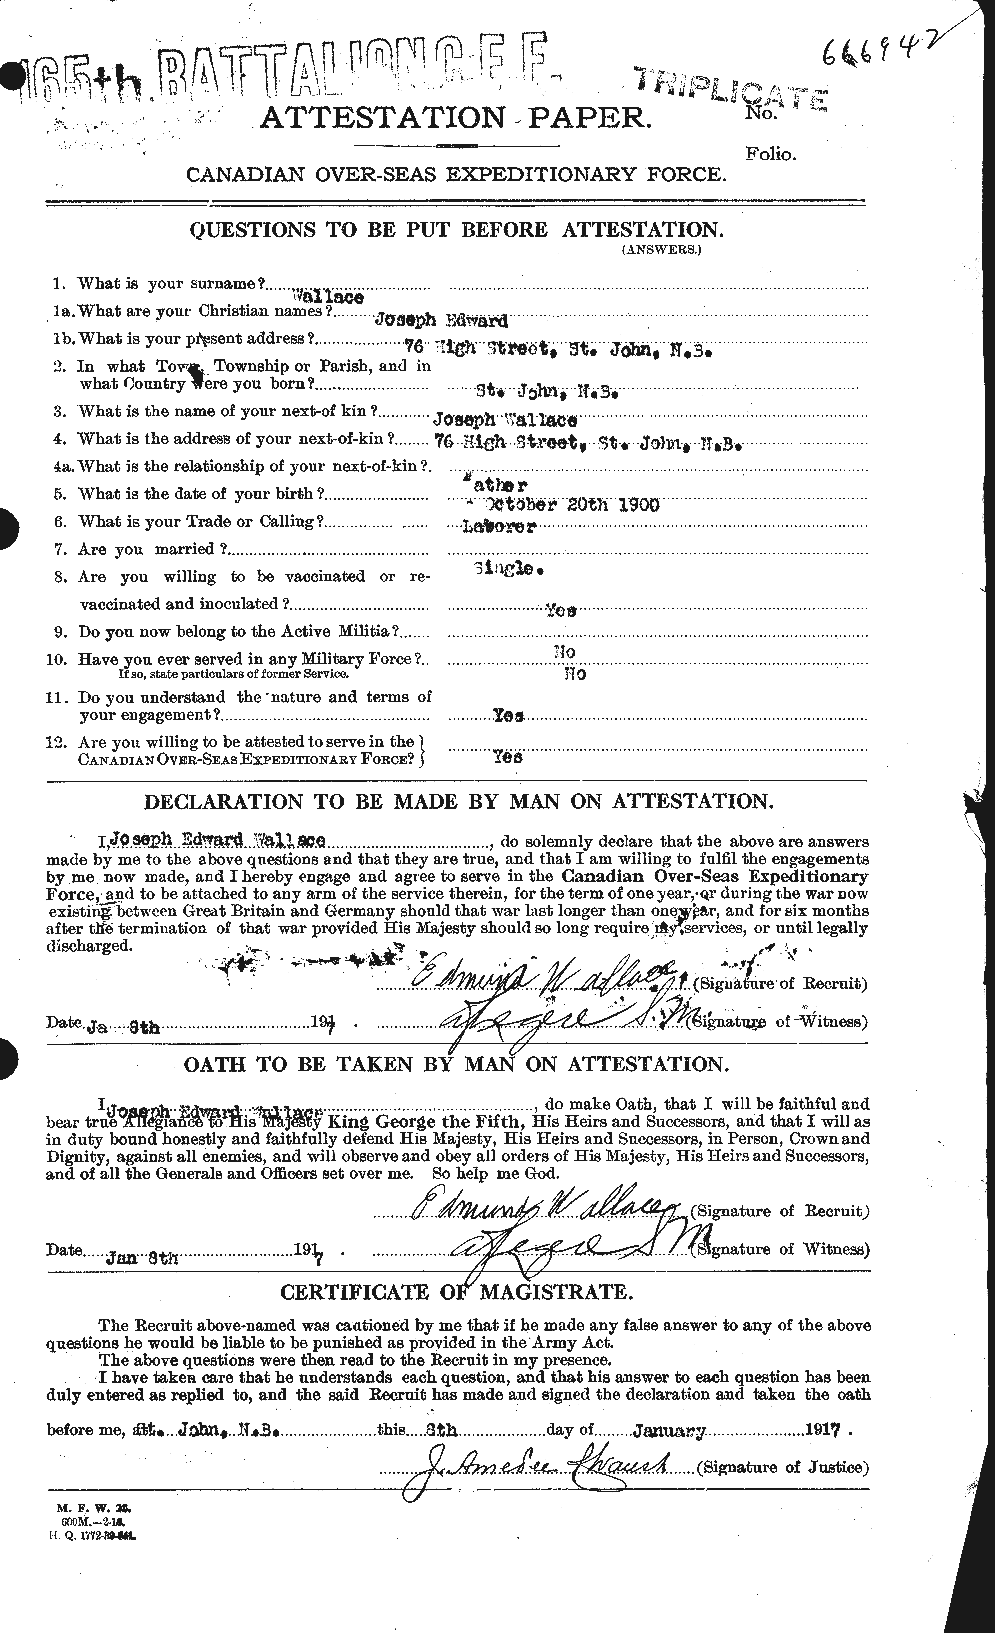 Dossiers du Personnel de la Première Guerre mondiale - CEC 654657a